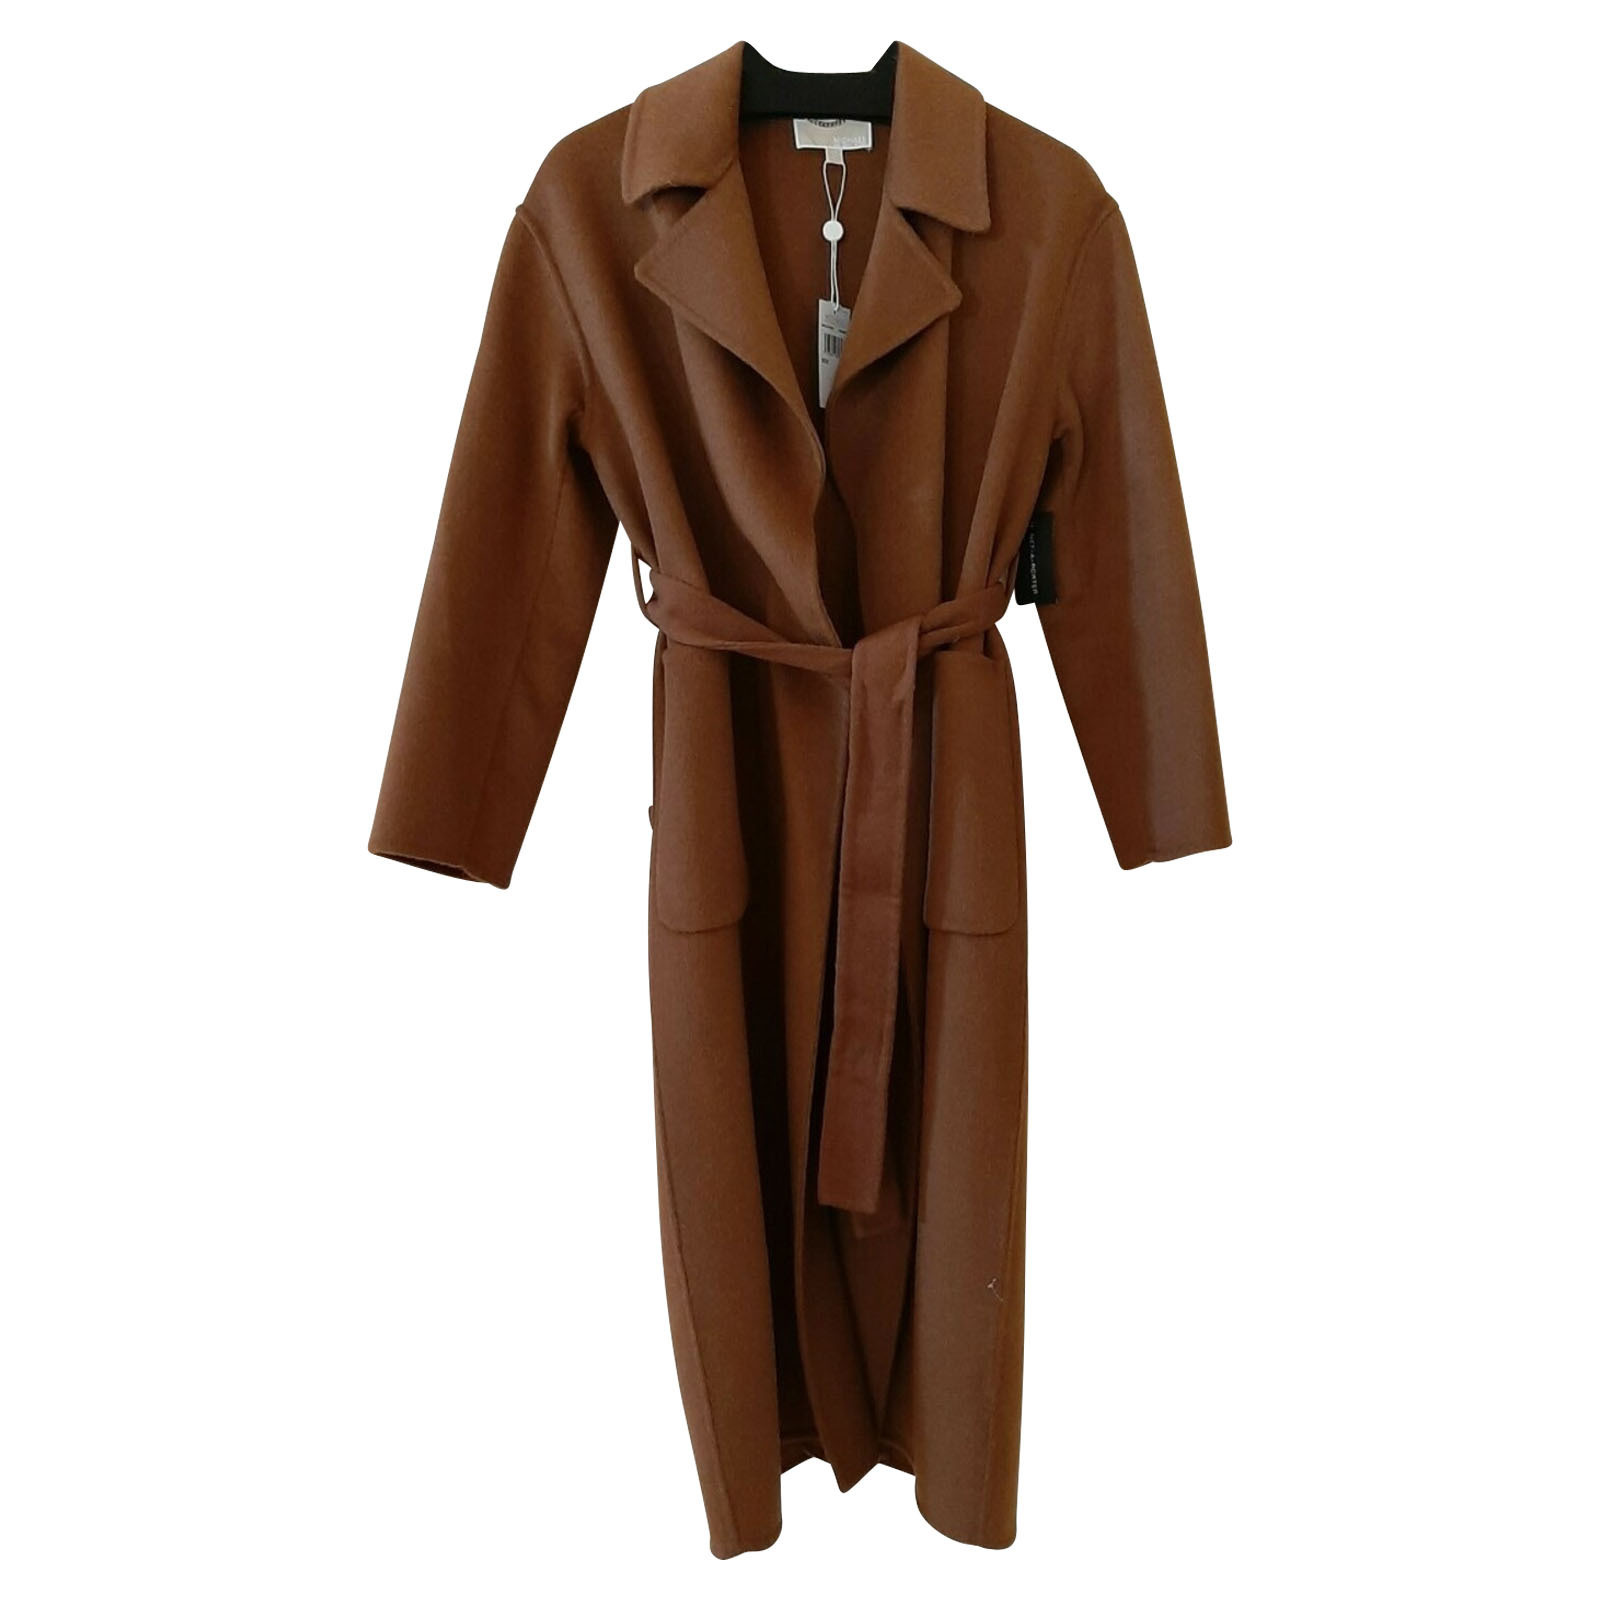 MICHAEL KORS Women's Jacke/Mantel aus Wolle in Ocker Size: S